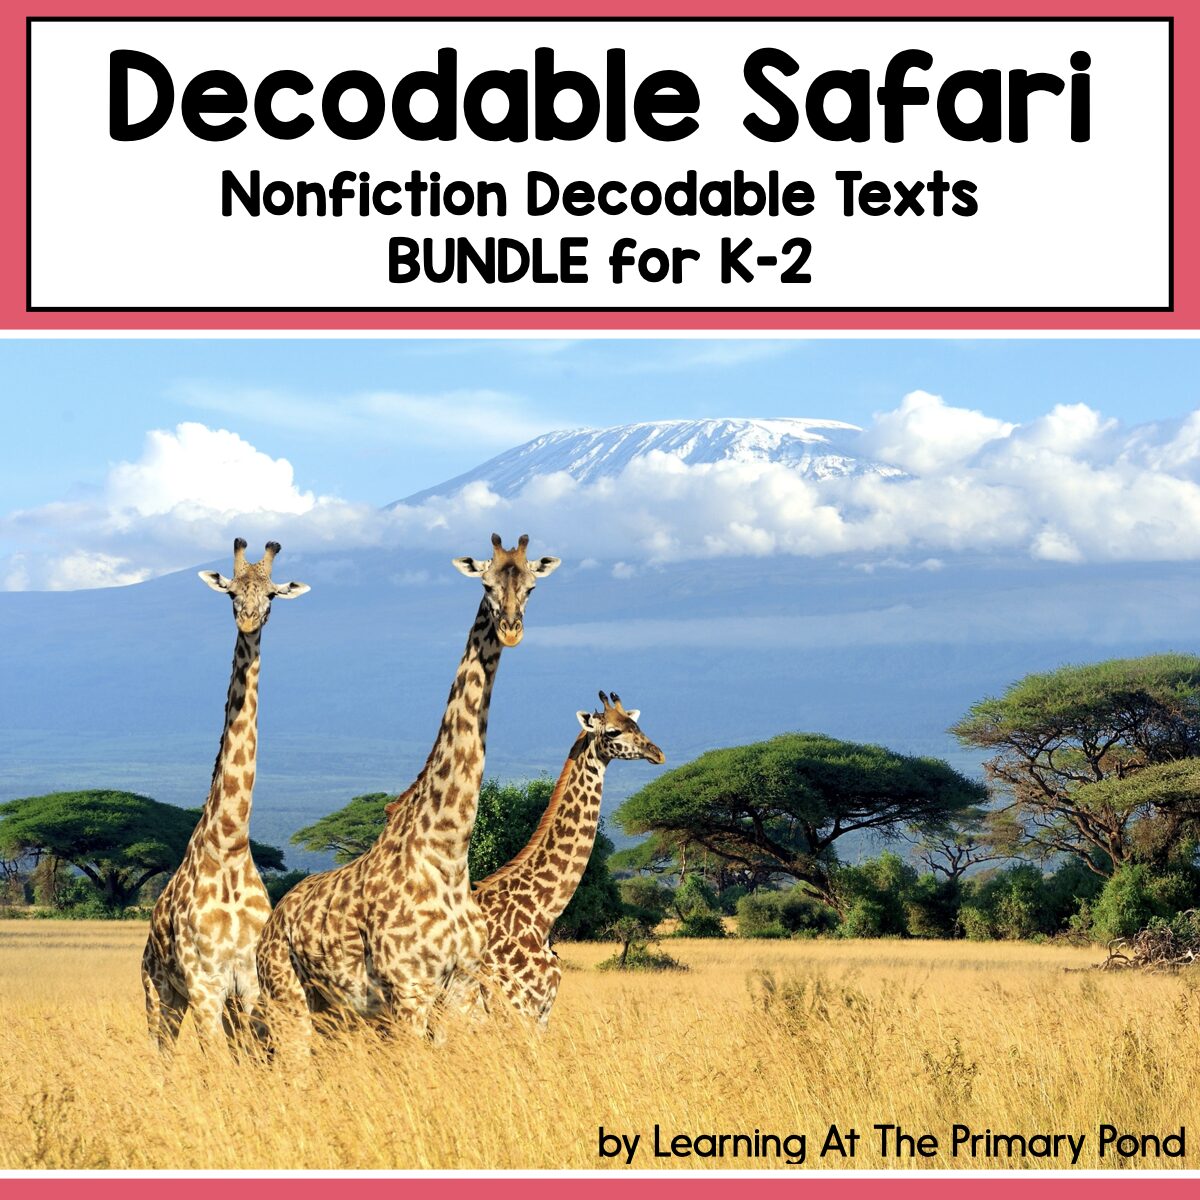 Decodable Safari Nonfiction Decodable Texts BUNDLE for K-2